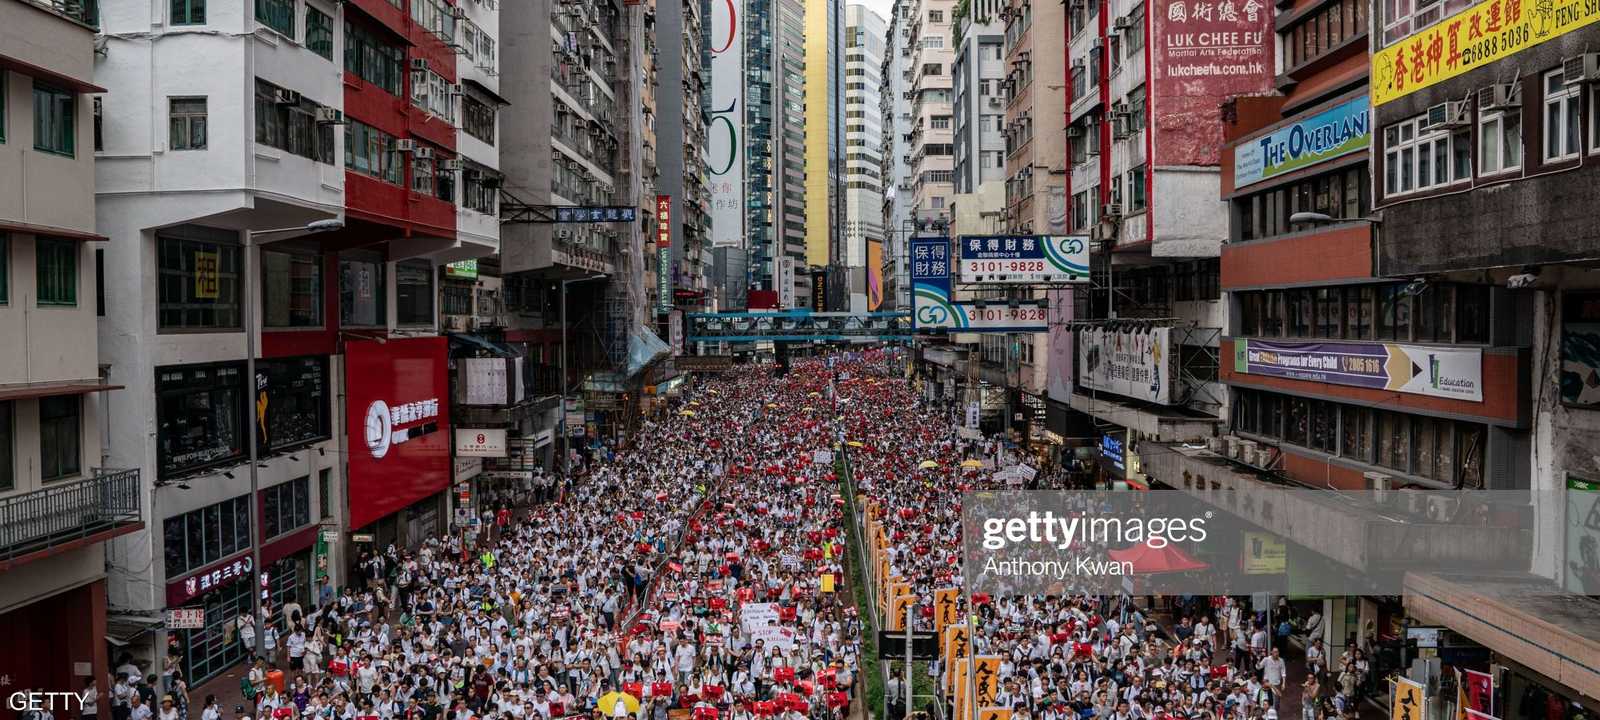 احتجاجات واسعة شهدتها هونغ كونغ خلال أشر